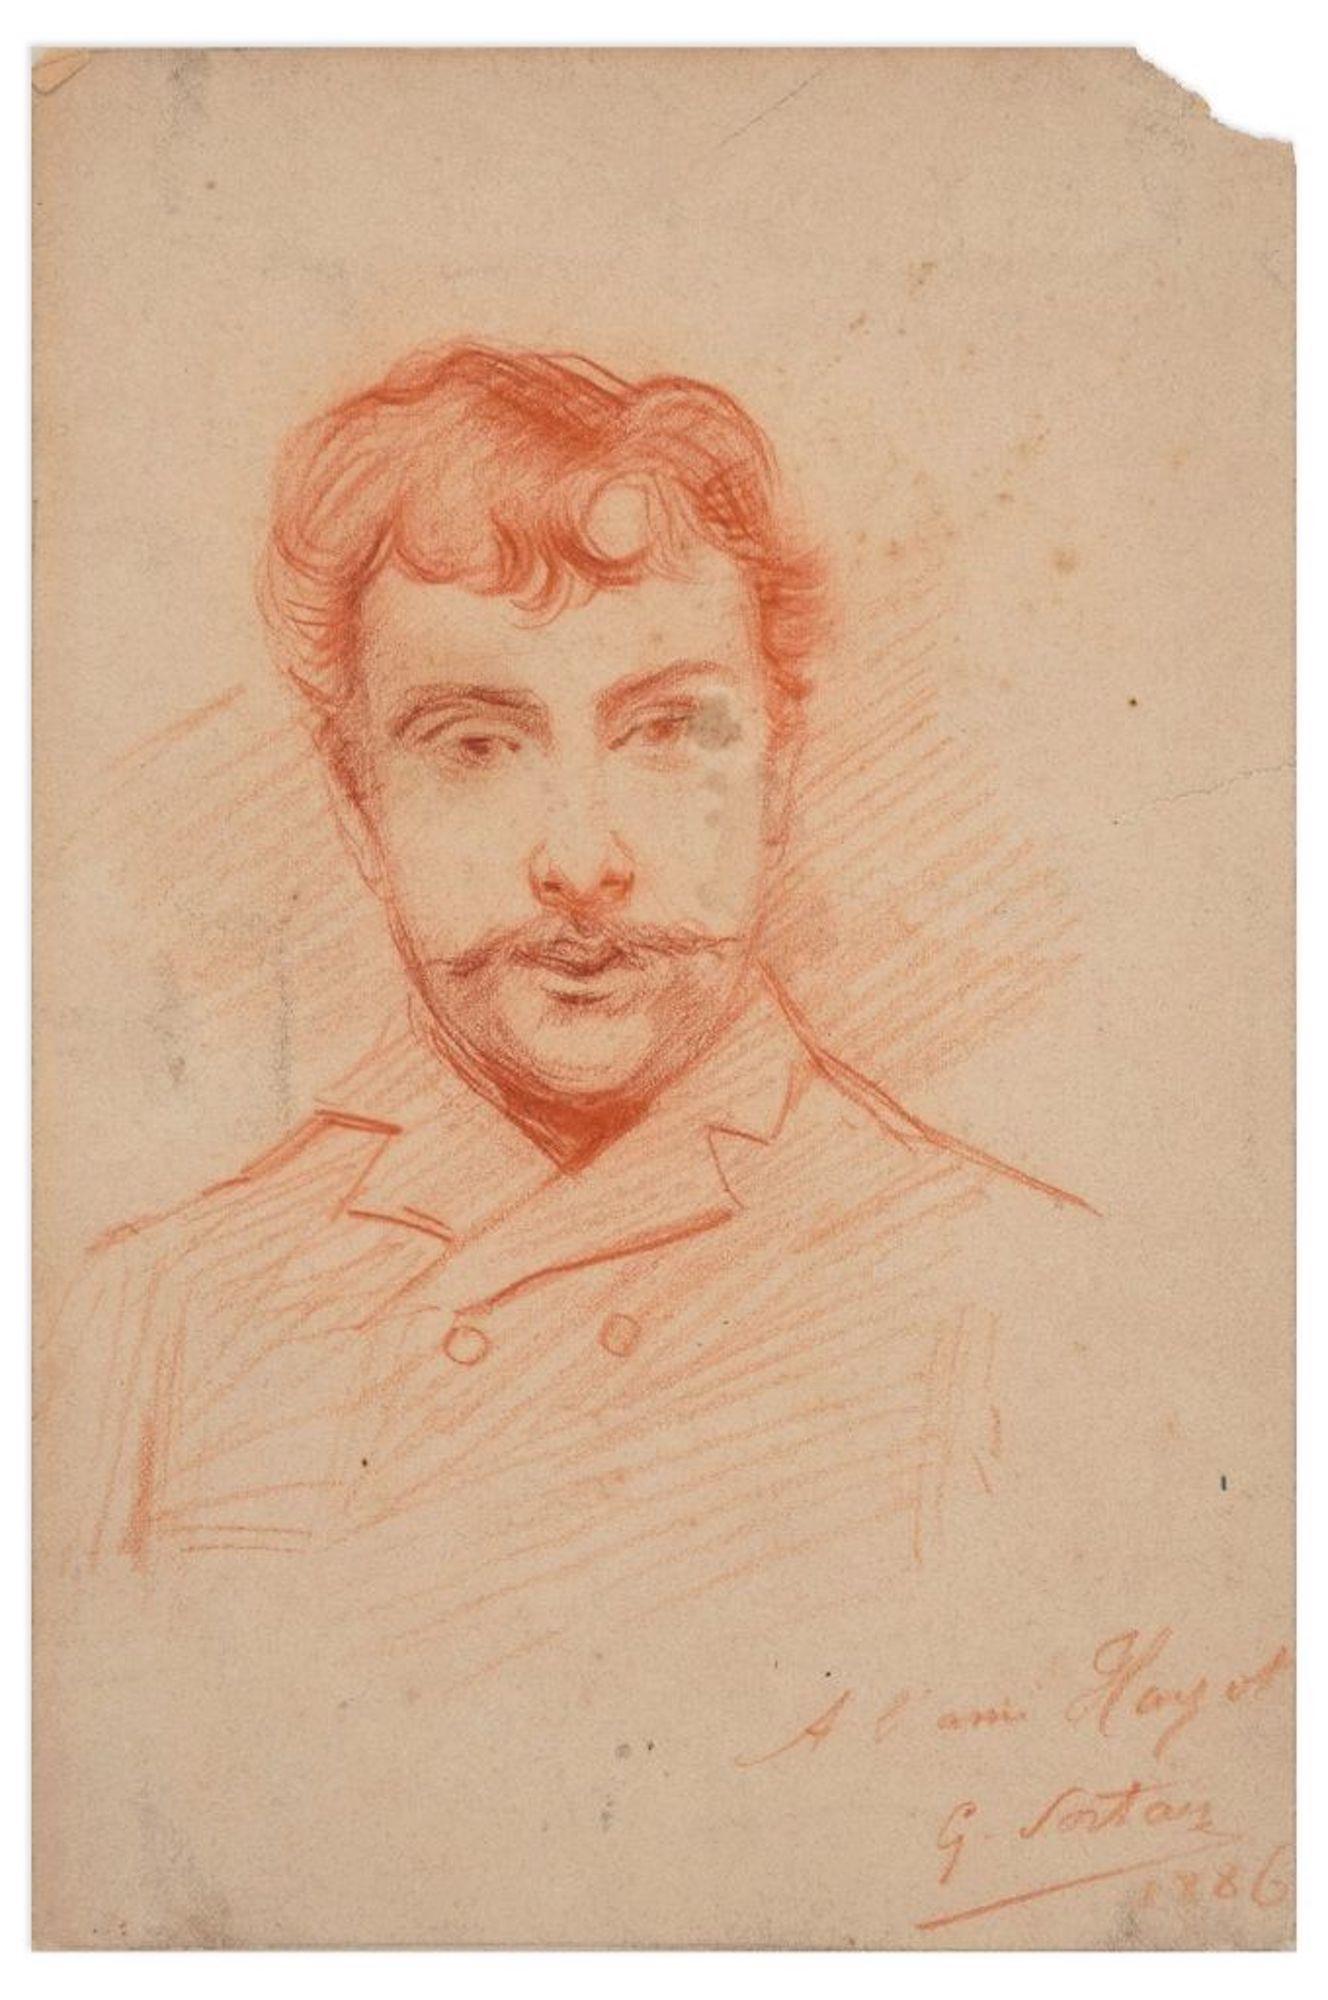 Portrait of a Man - Original Pencil Drawing by G.J. Sortais - 1886 - Art by Georges Julien Sortais